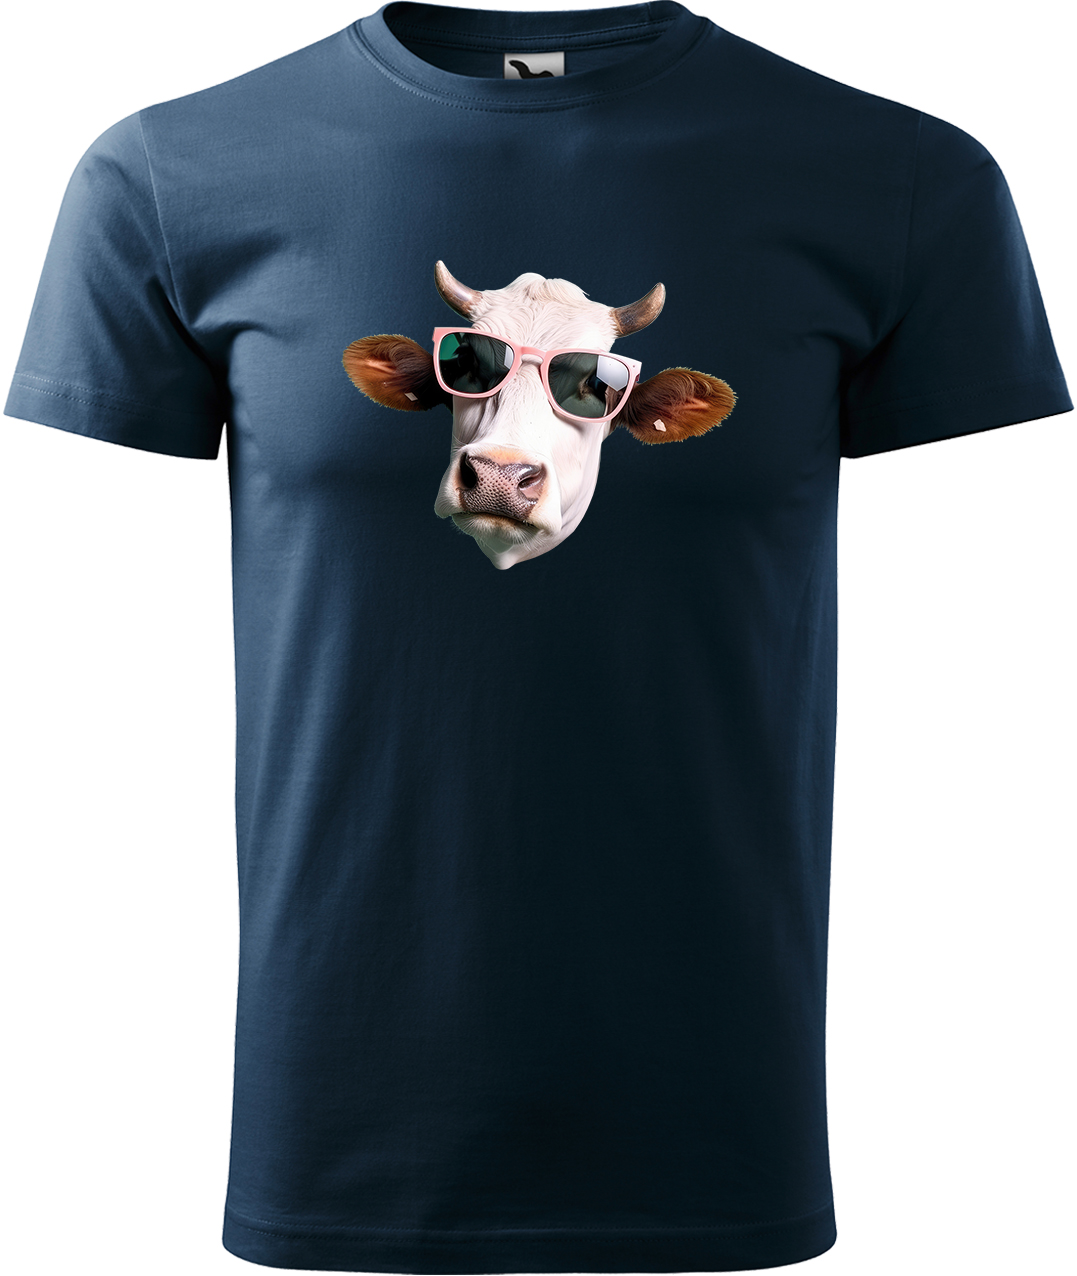 Pánské tričko s krávou - Kráva v brýlích Velikost: L, Barva: Námořní modrá (02), Střih: pánský